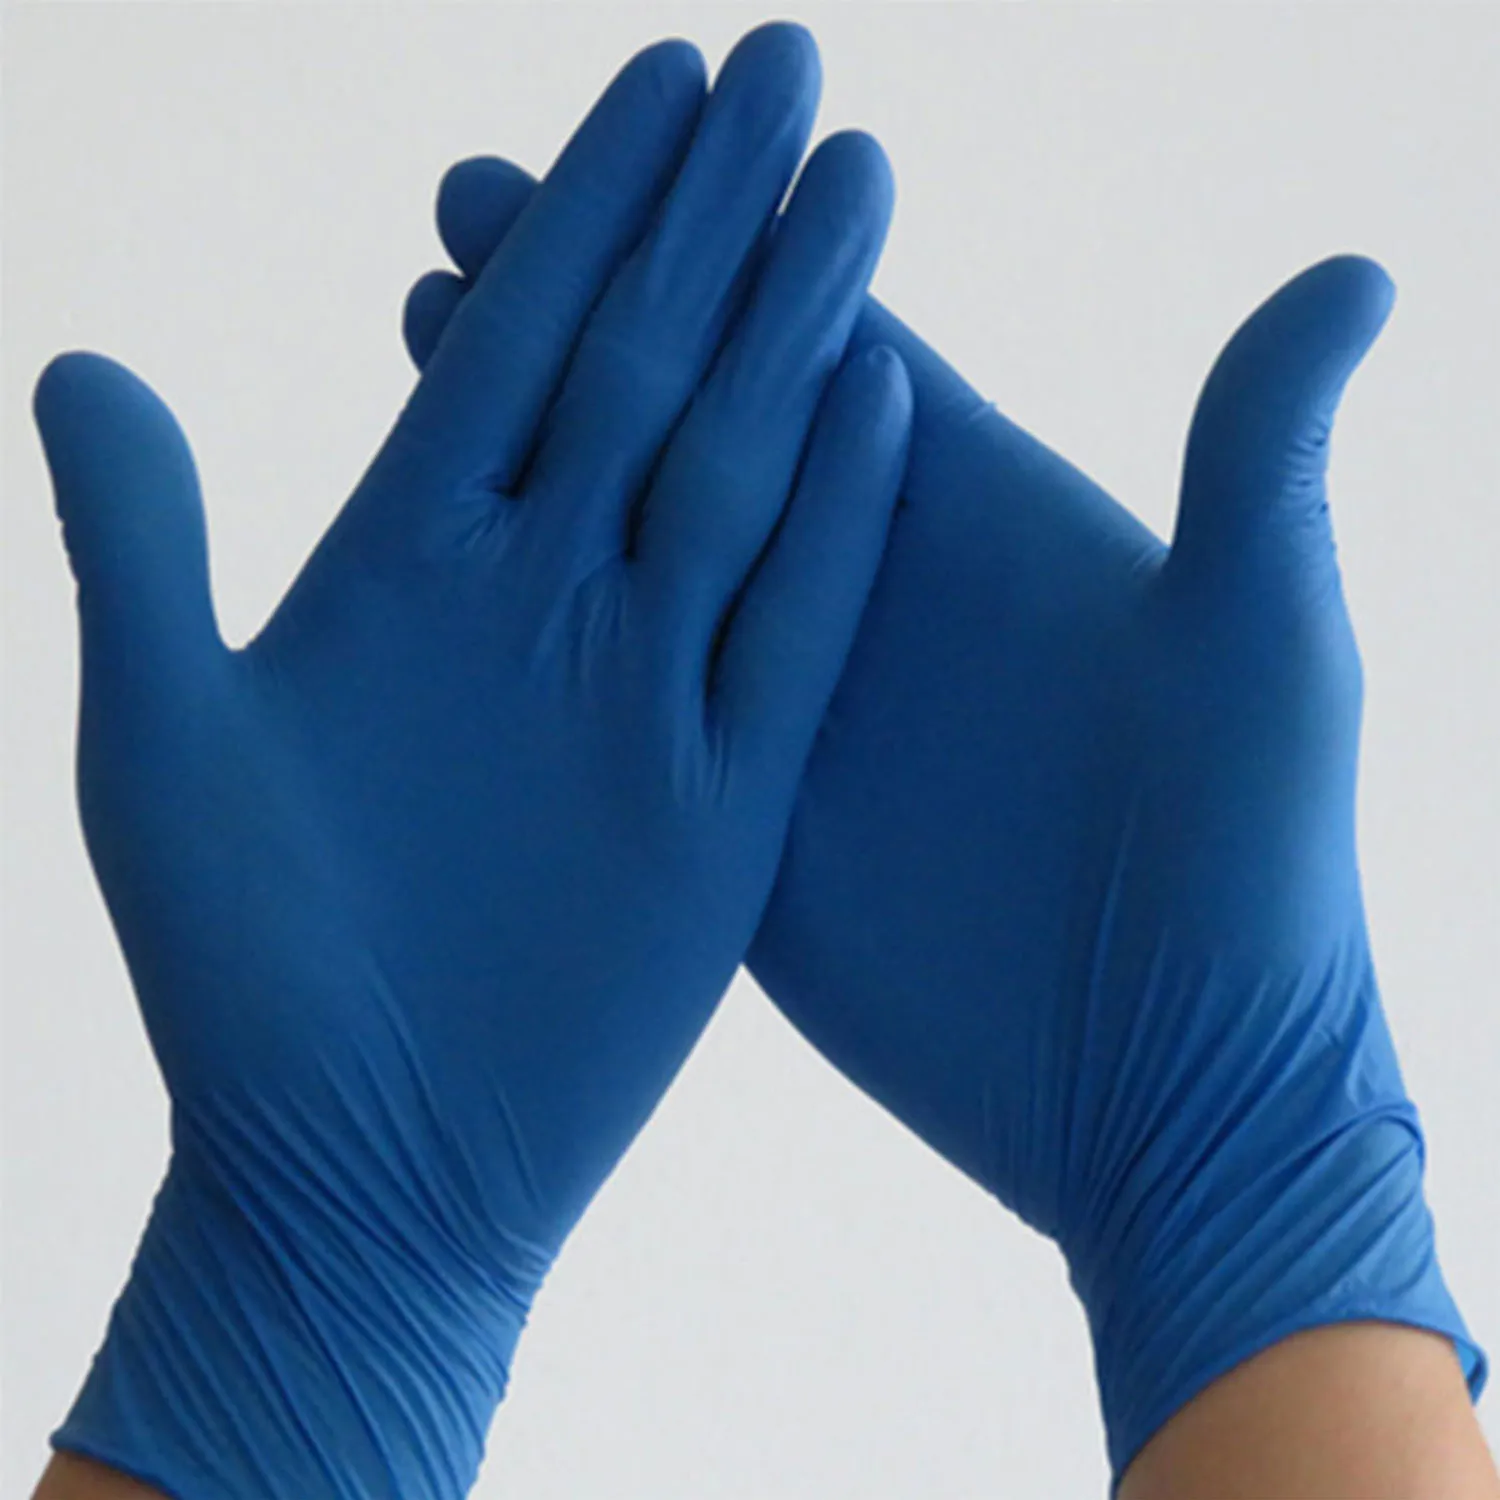 
Nitrile Gloves Gloves Singapore Posi Nitrile Malesia Nitrile Latex Examination Gloves Kitchen 300pair 100 Pieces/box Yellow Bag 